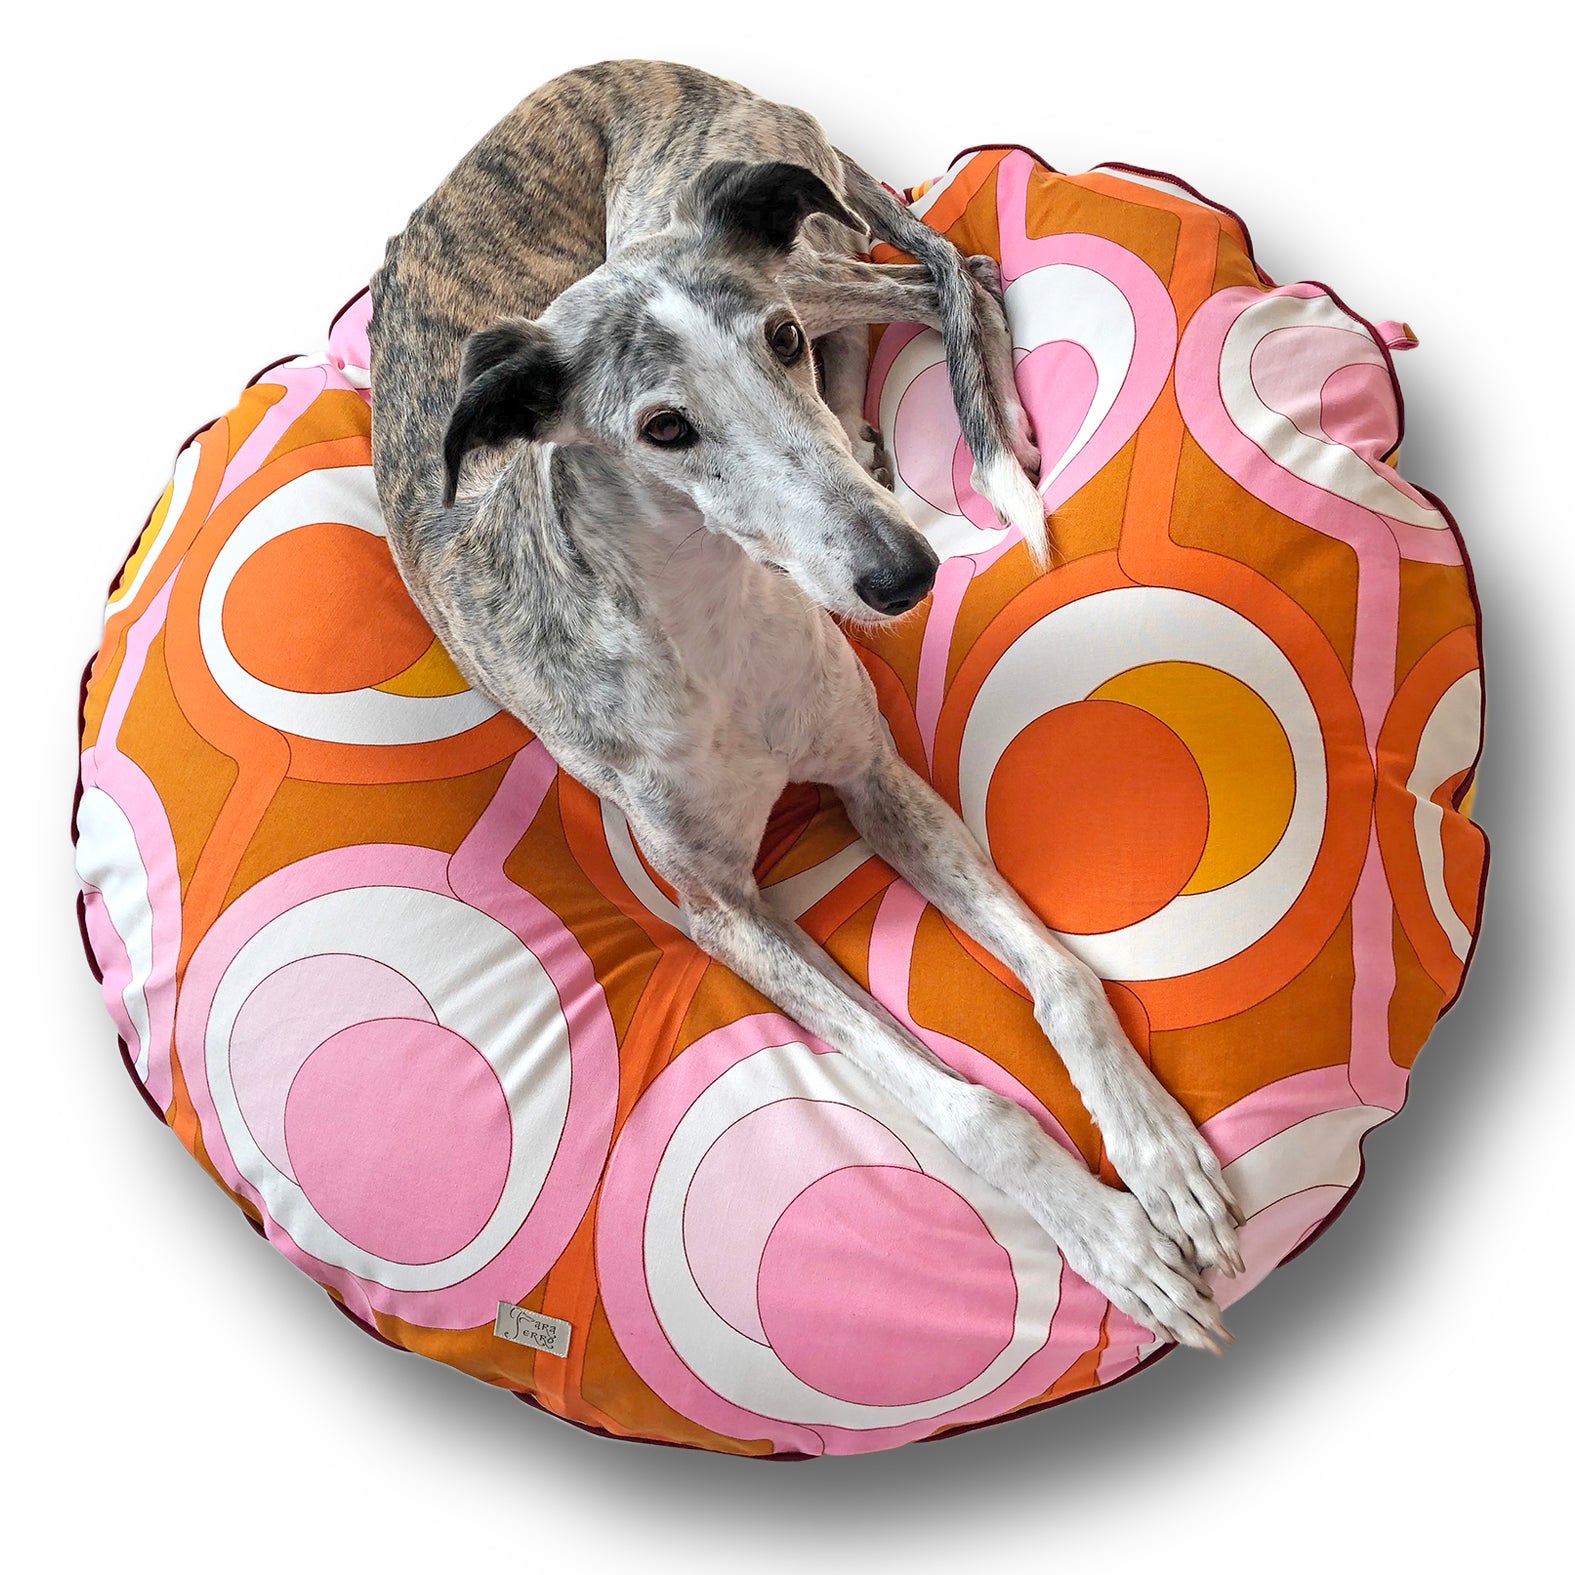 Hundebett rund aus Vintagestoff 70er Muster in Orange, Braun und Pink für große Hunde wie z.B. Windhunde